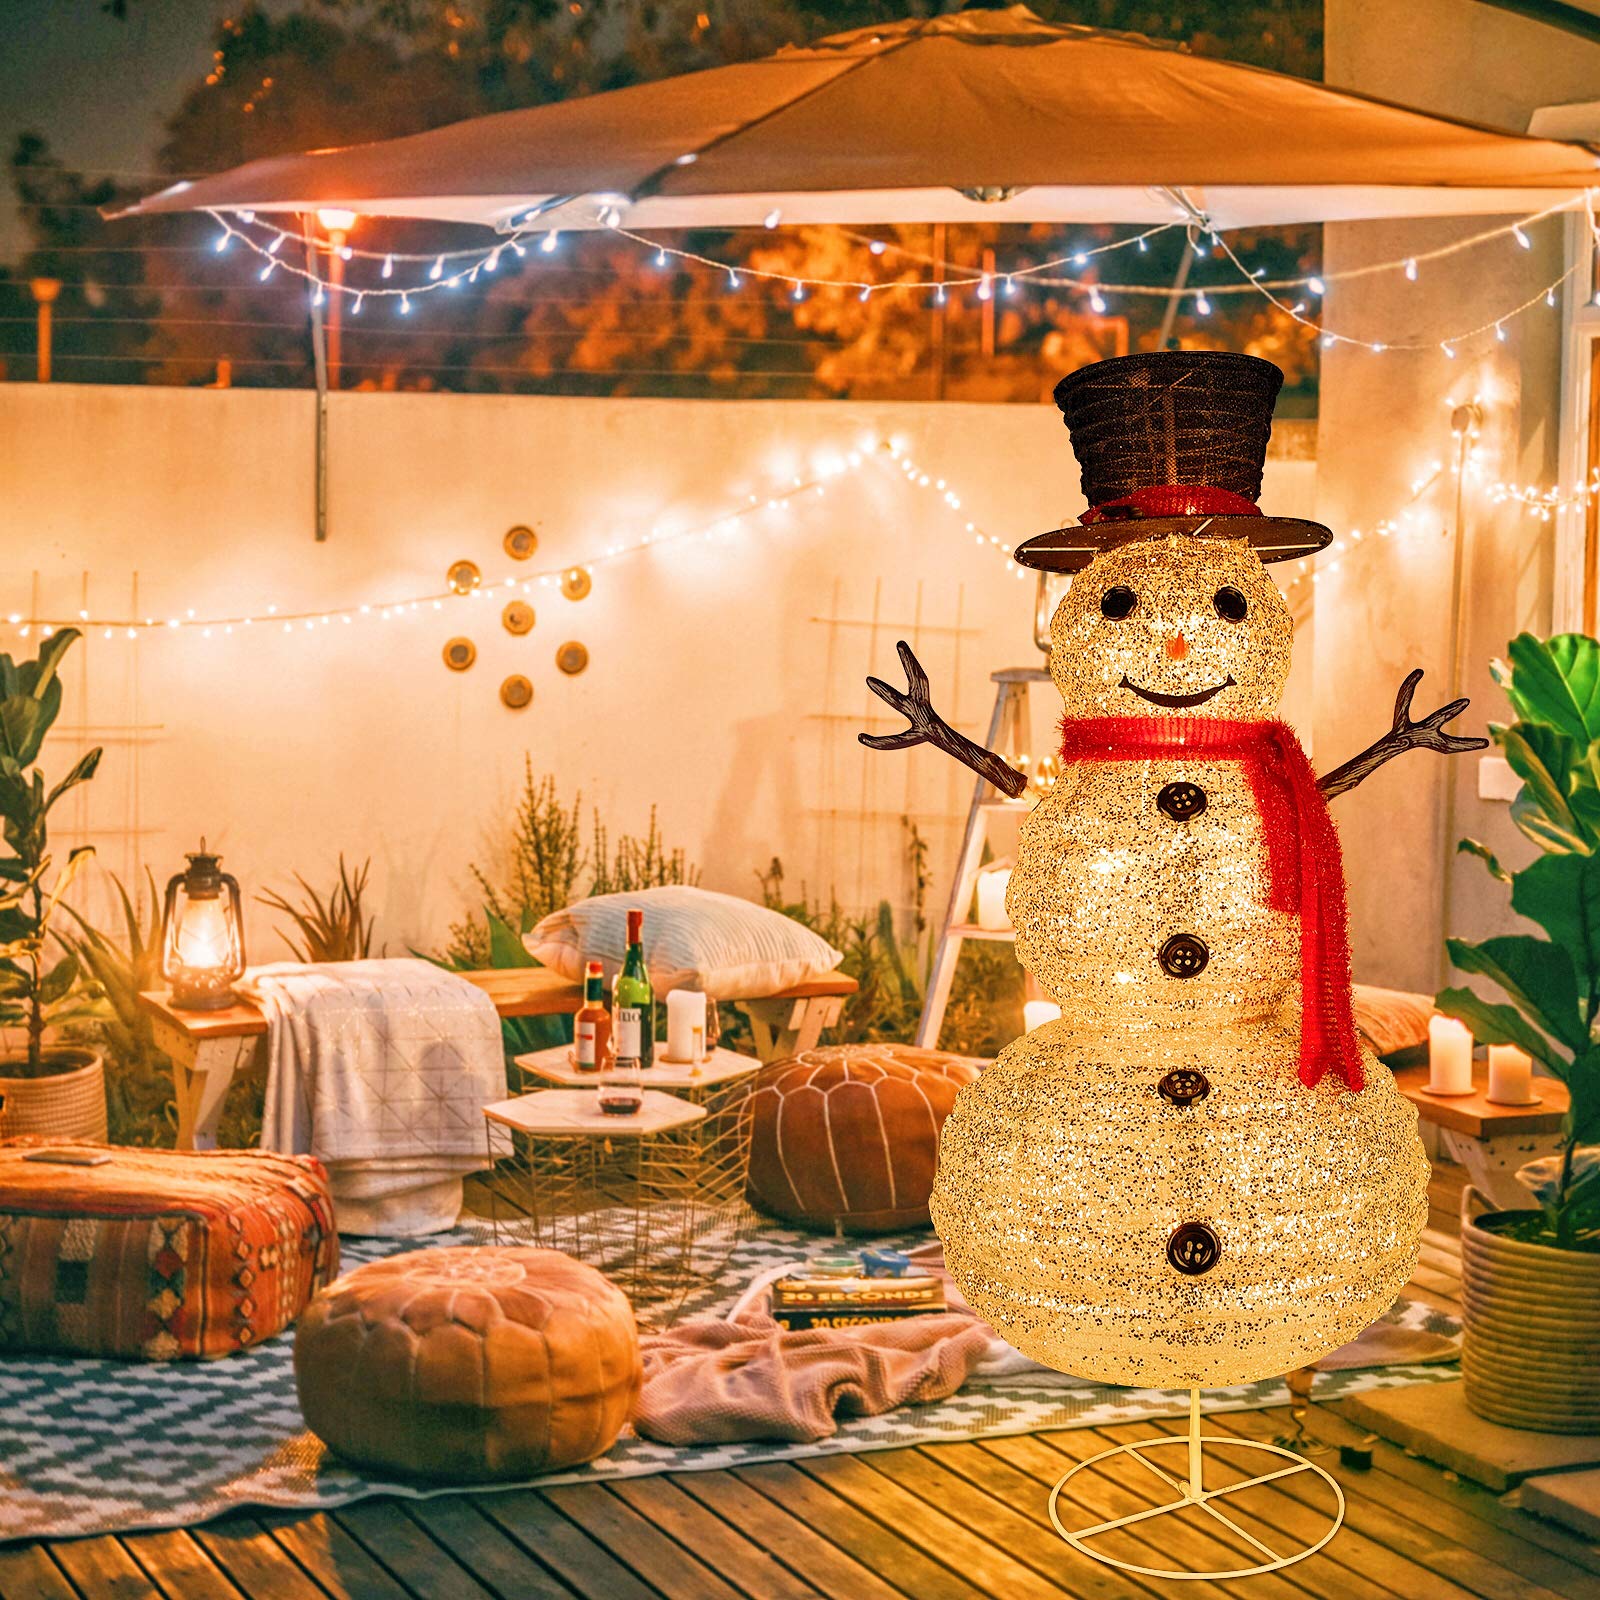 Christmas LED Lighted Snowman, Yard Decor, 4 FT